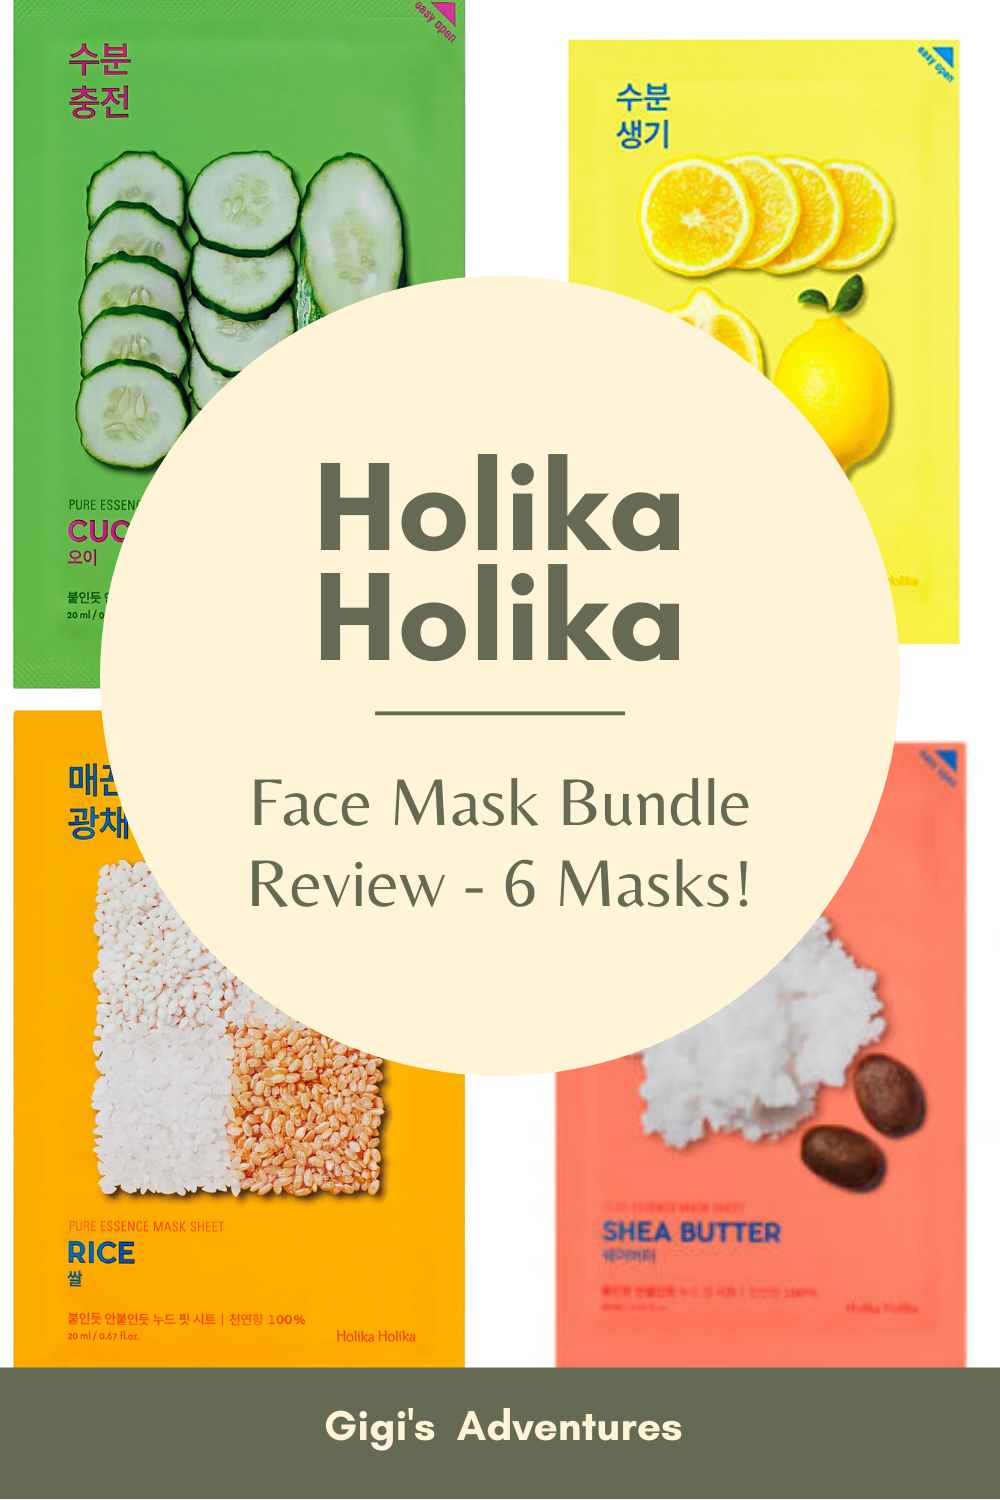 Holika Holika Face Mask Bundle (6 Masks) Review - Is It Worth It?